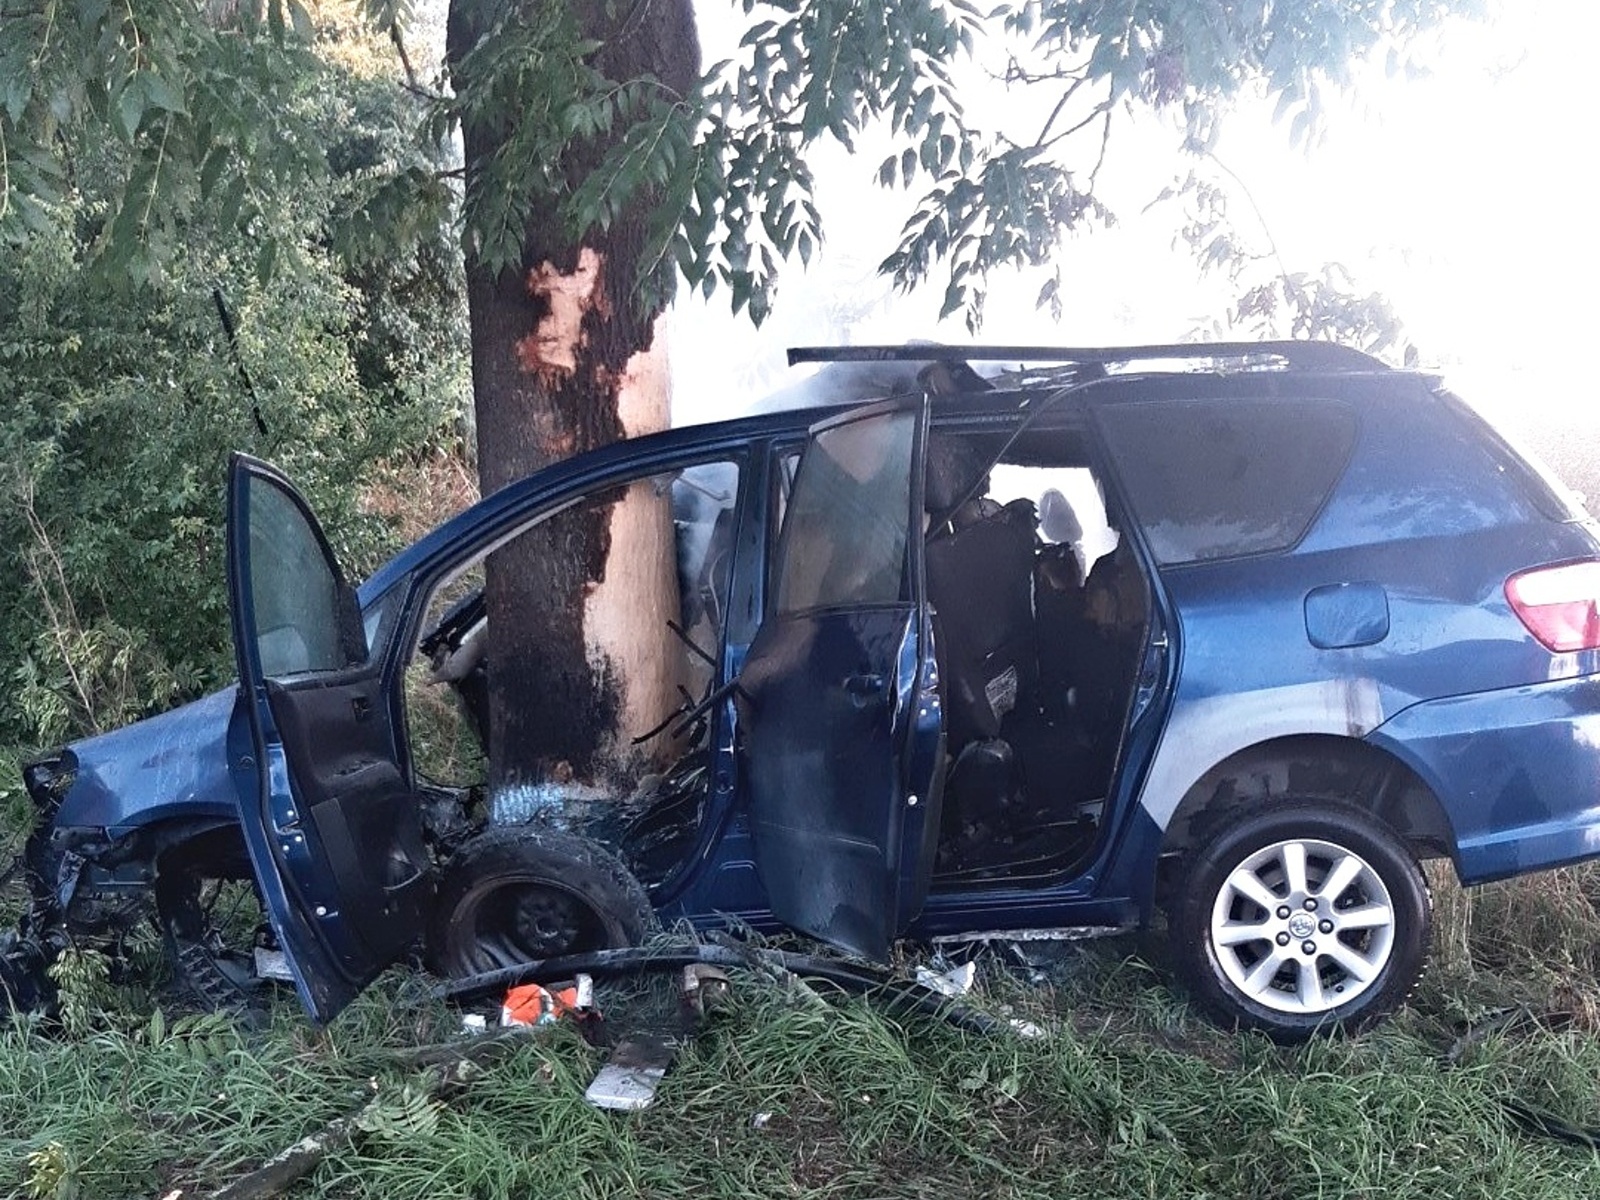 064-Havárie osobního auta s následným požárem v obci Dřevčice v okrese Praha-východ.jpg